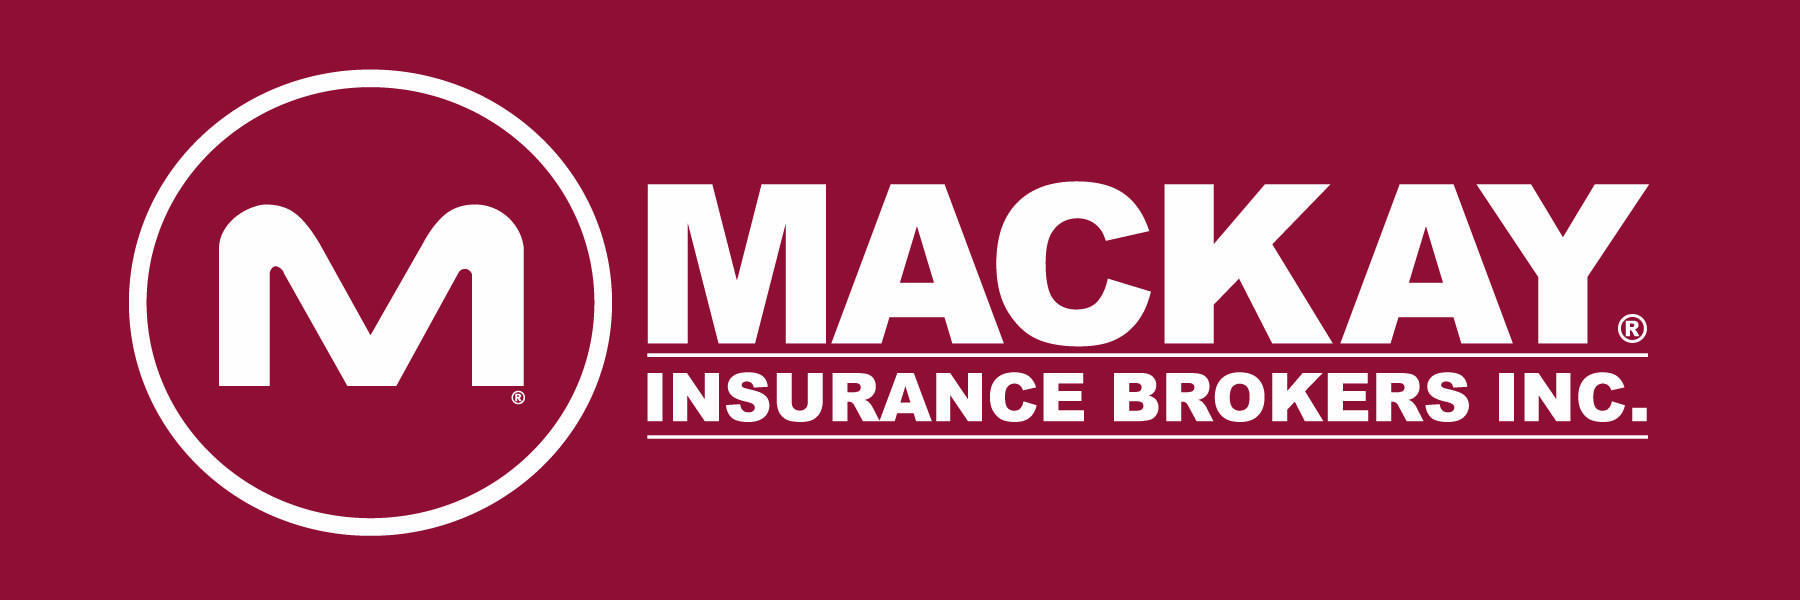 Mackay Insurance Brokers Inc.